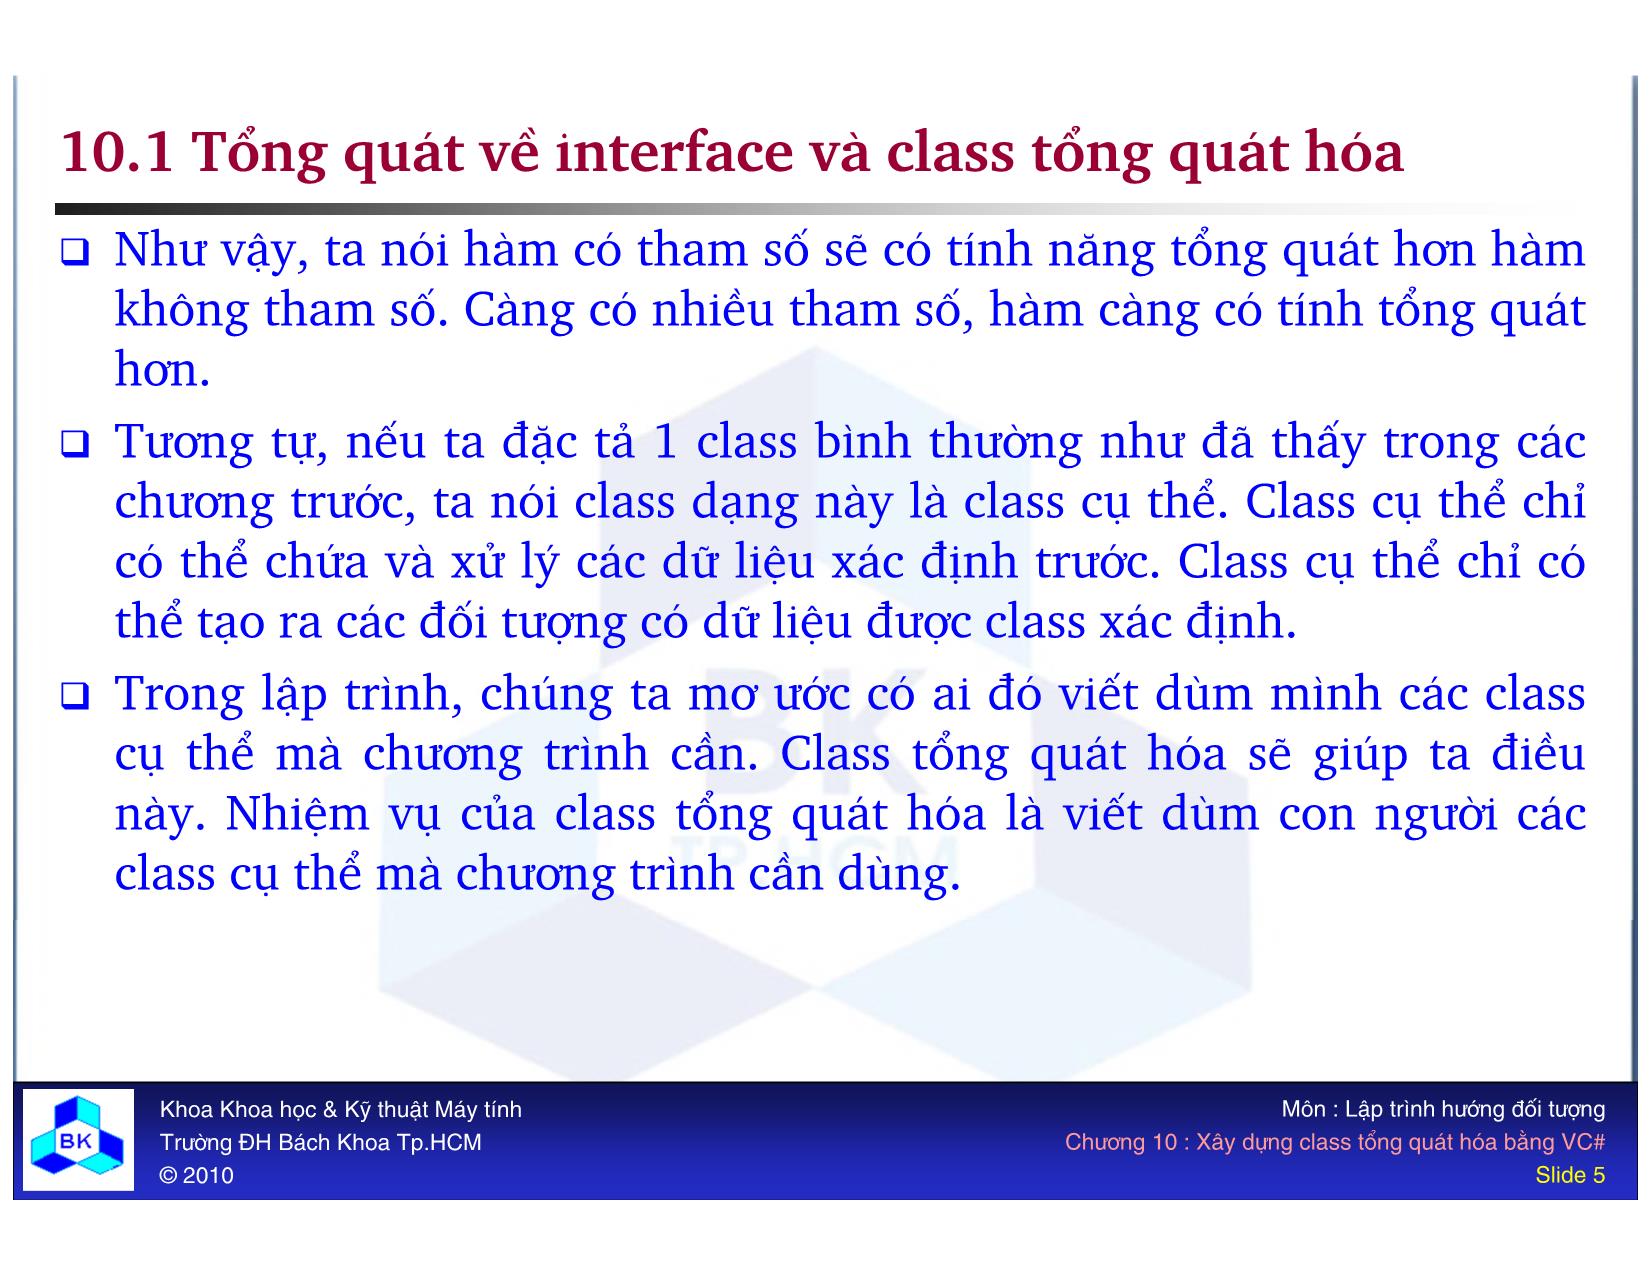 Bài giảng Lập trình hướng đối tượng - Chương 10: Xây dựng class tổng quát hóa bằng VC# trang 5